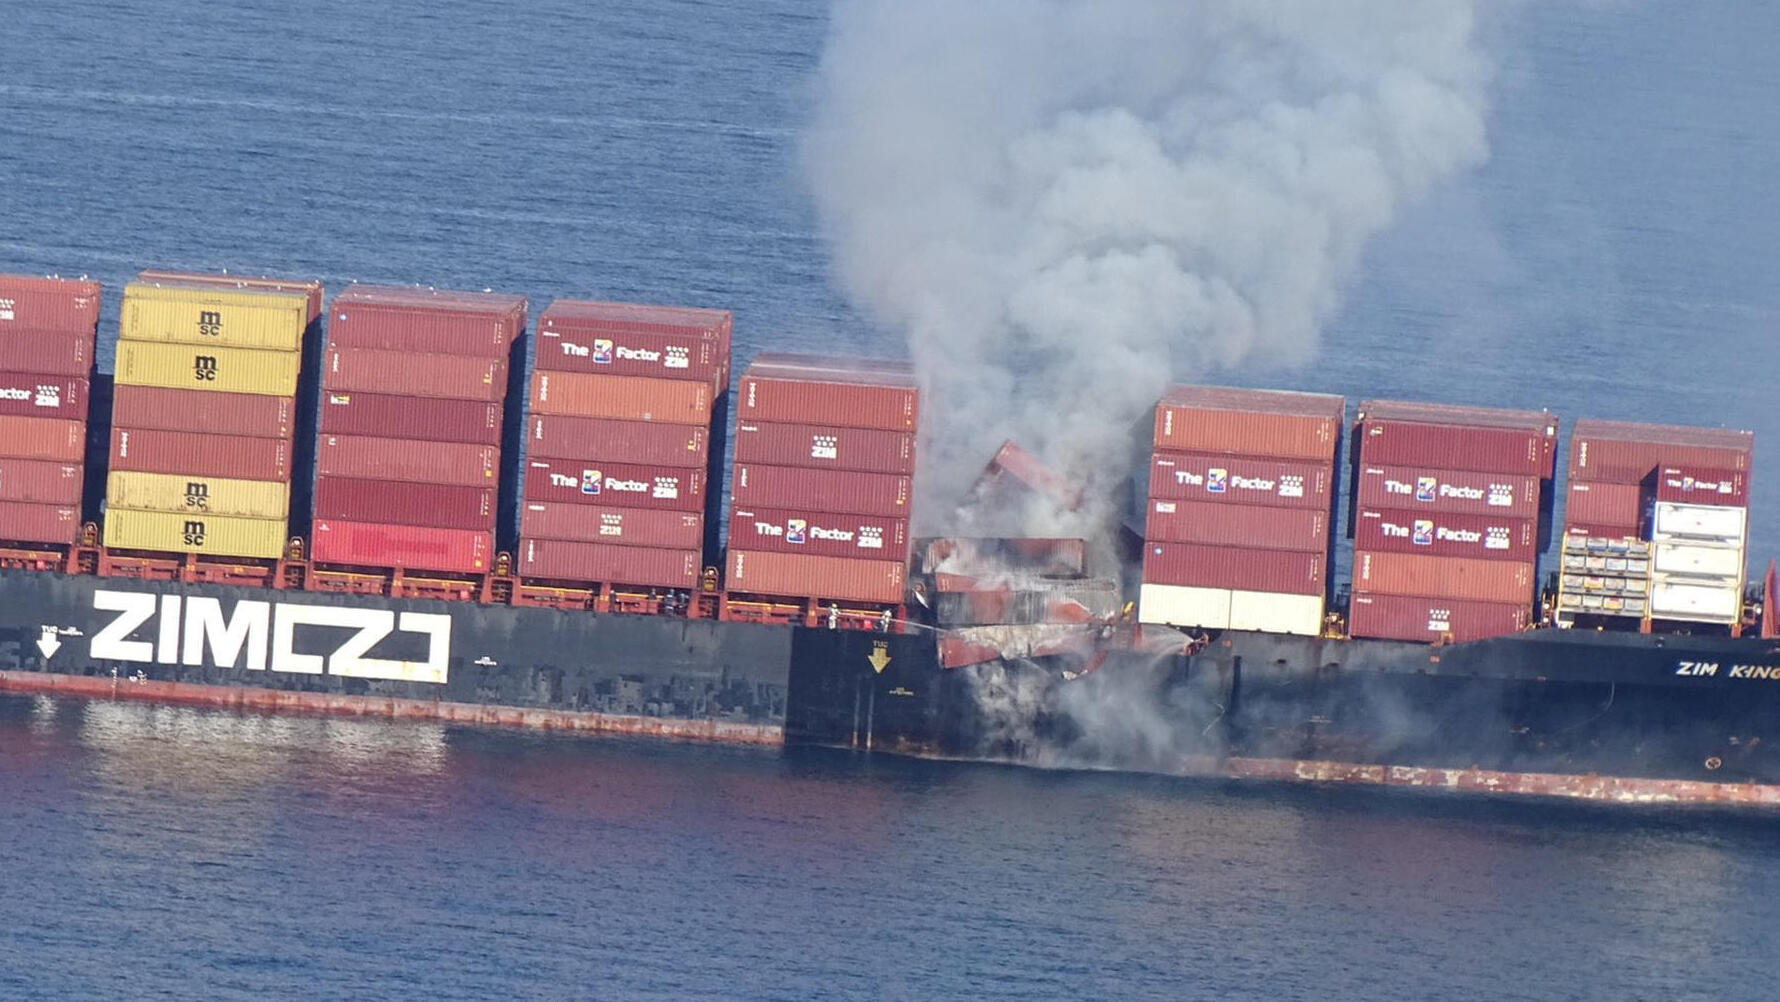 אוניה קינגסטון צים שריפה מול חופי קנדה